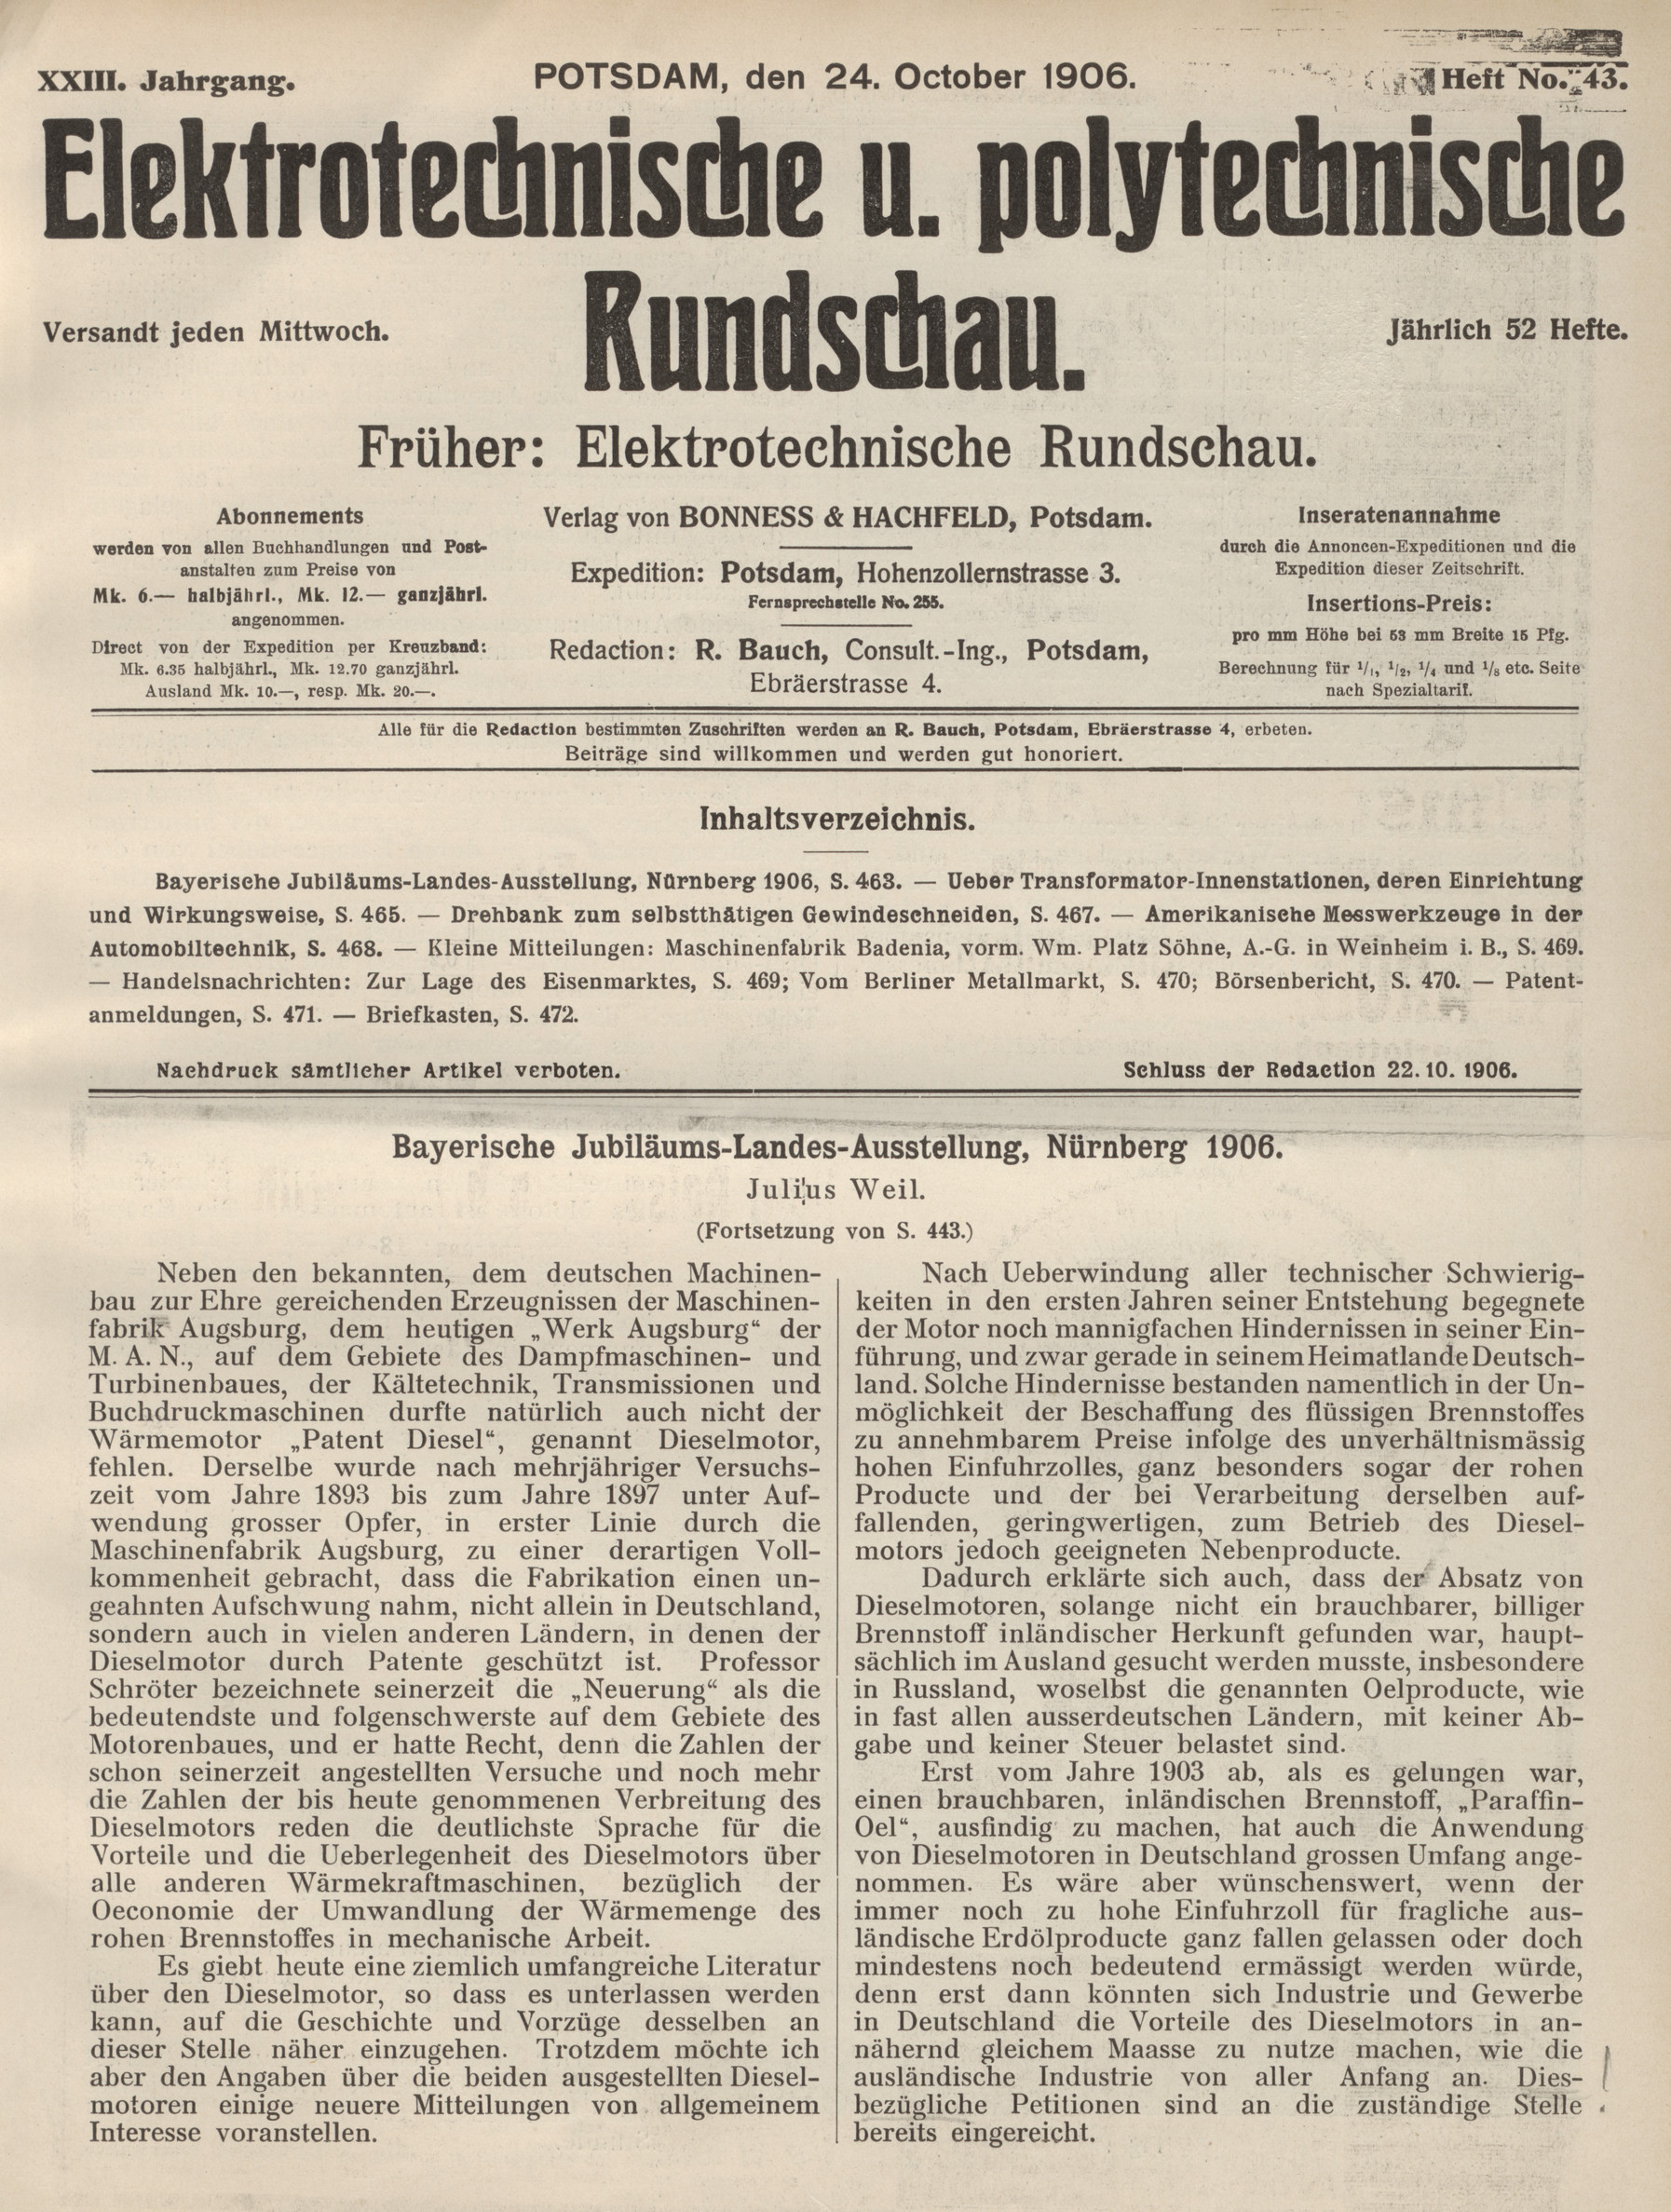 Elektrotechnische und polytechnische Rundschau, XXIII. Jahrgang, Heft No. 43